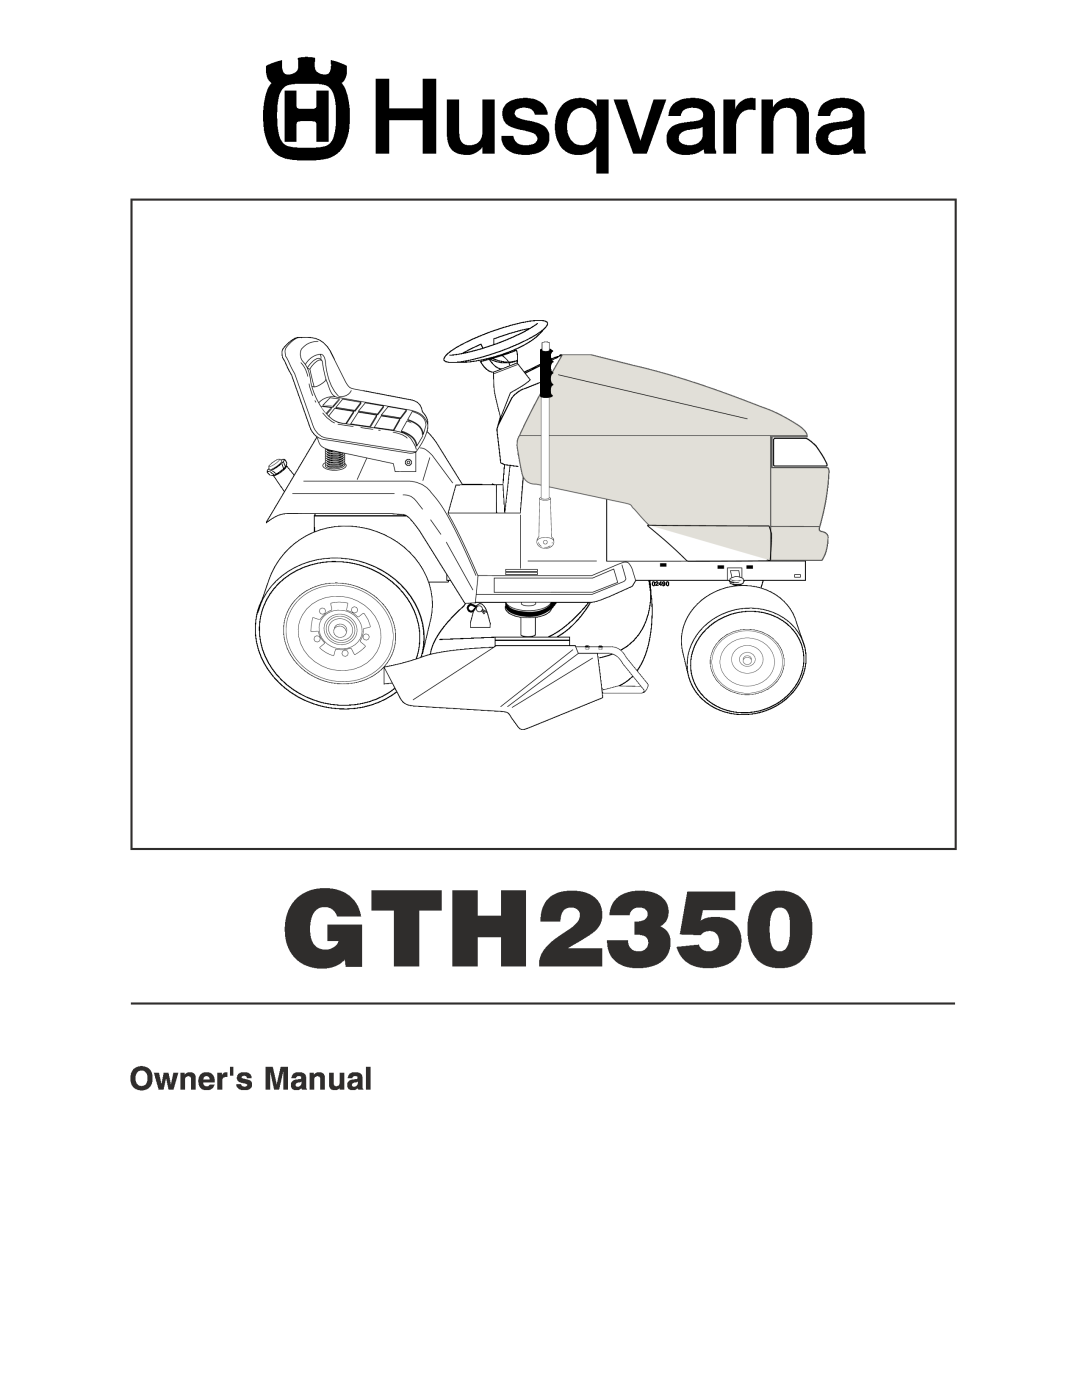 Husqvarna GTH2350 owner manual Owners Manual, 02490 